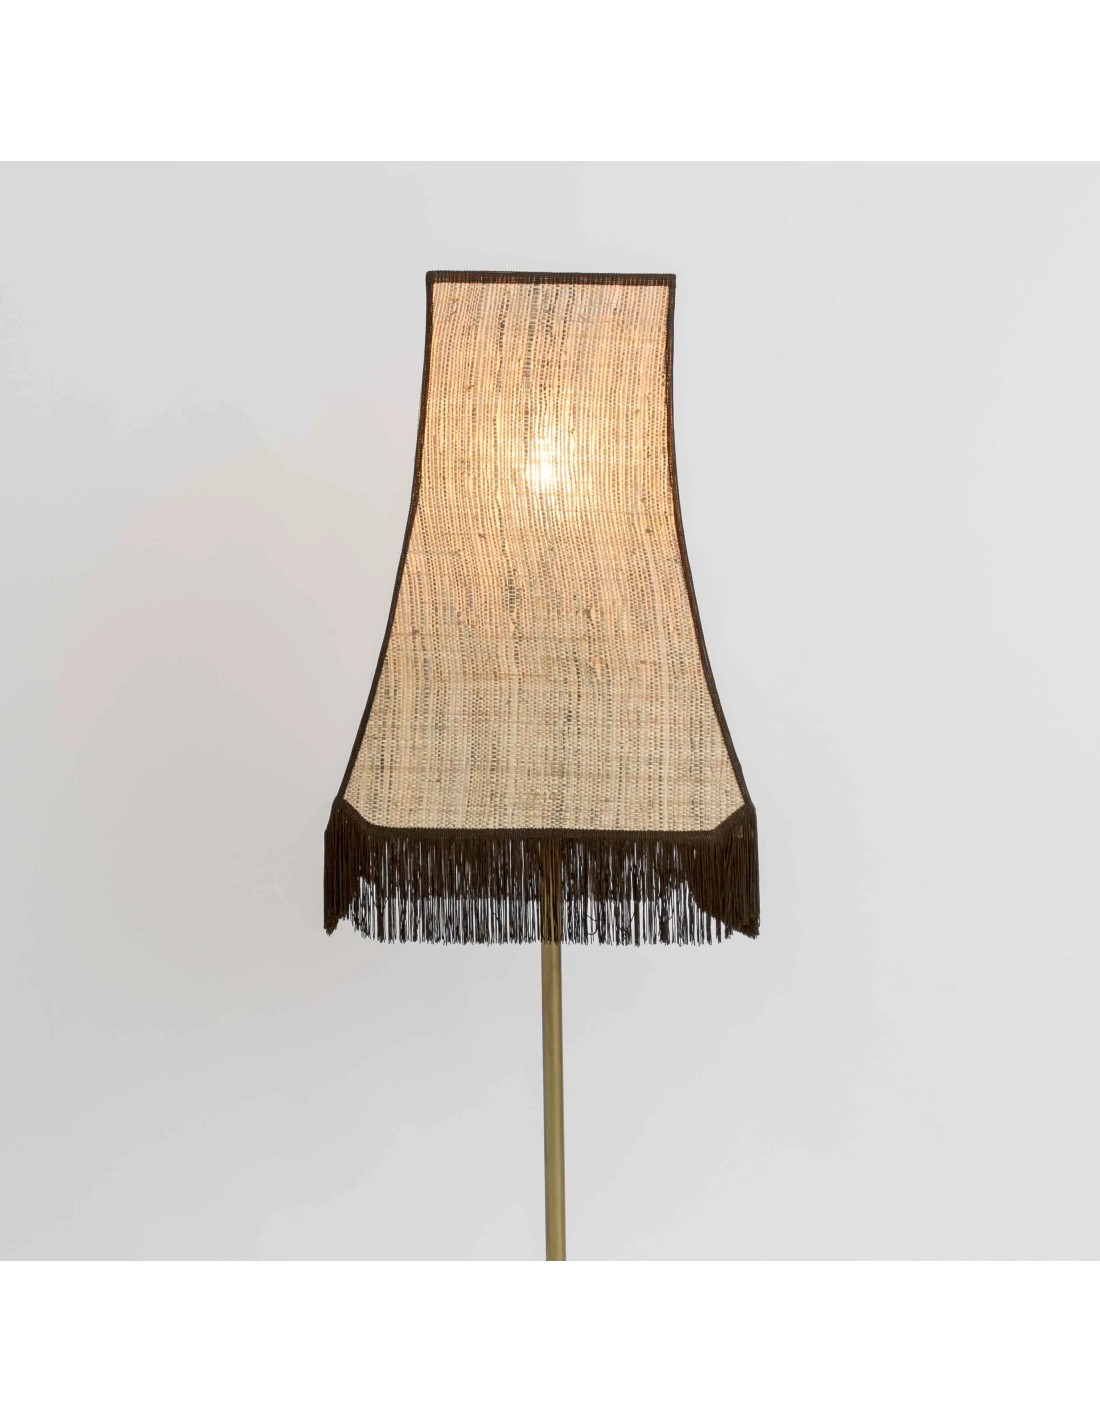 lámpara de pie de tela fibras naturales perfecta para decoraciones con carácter